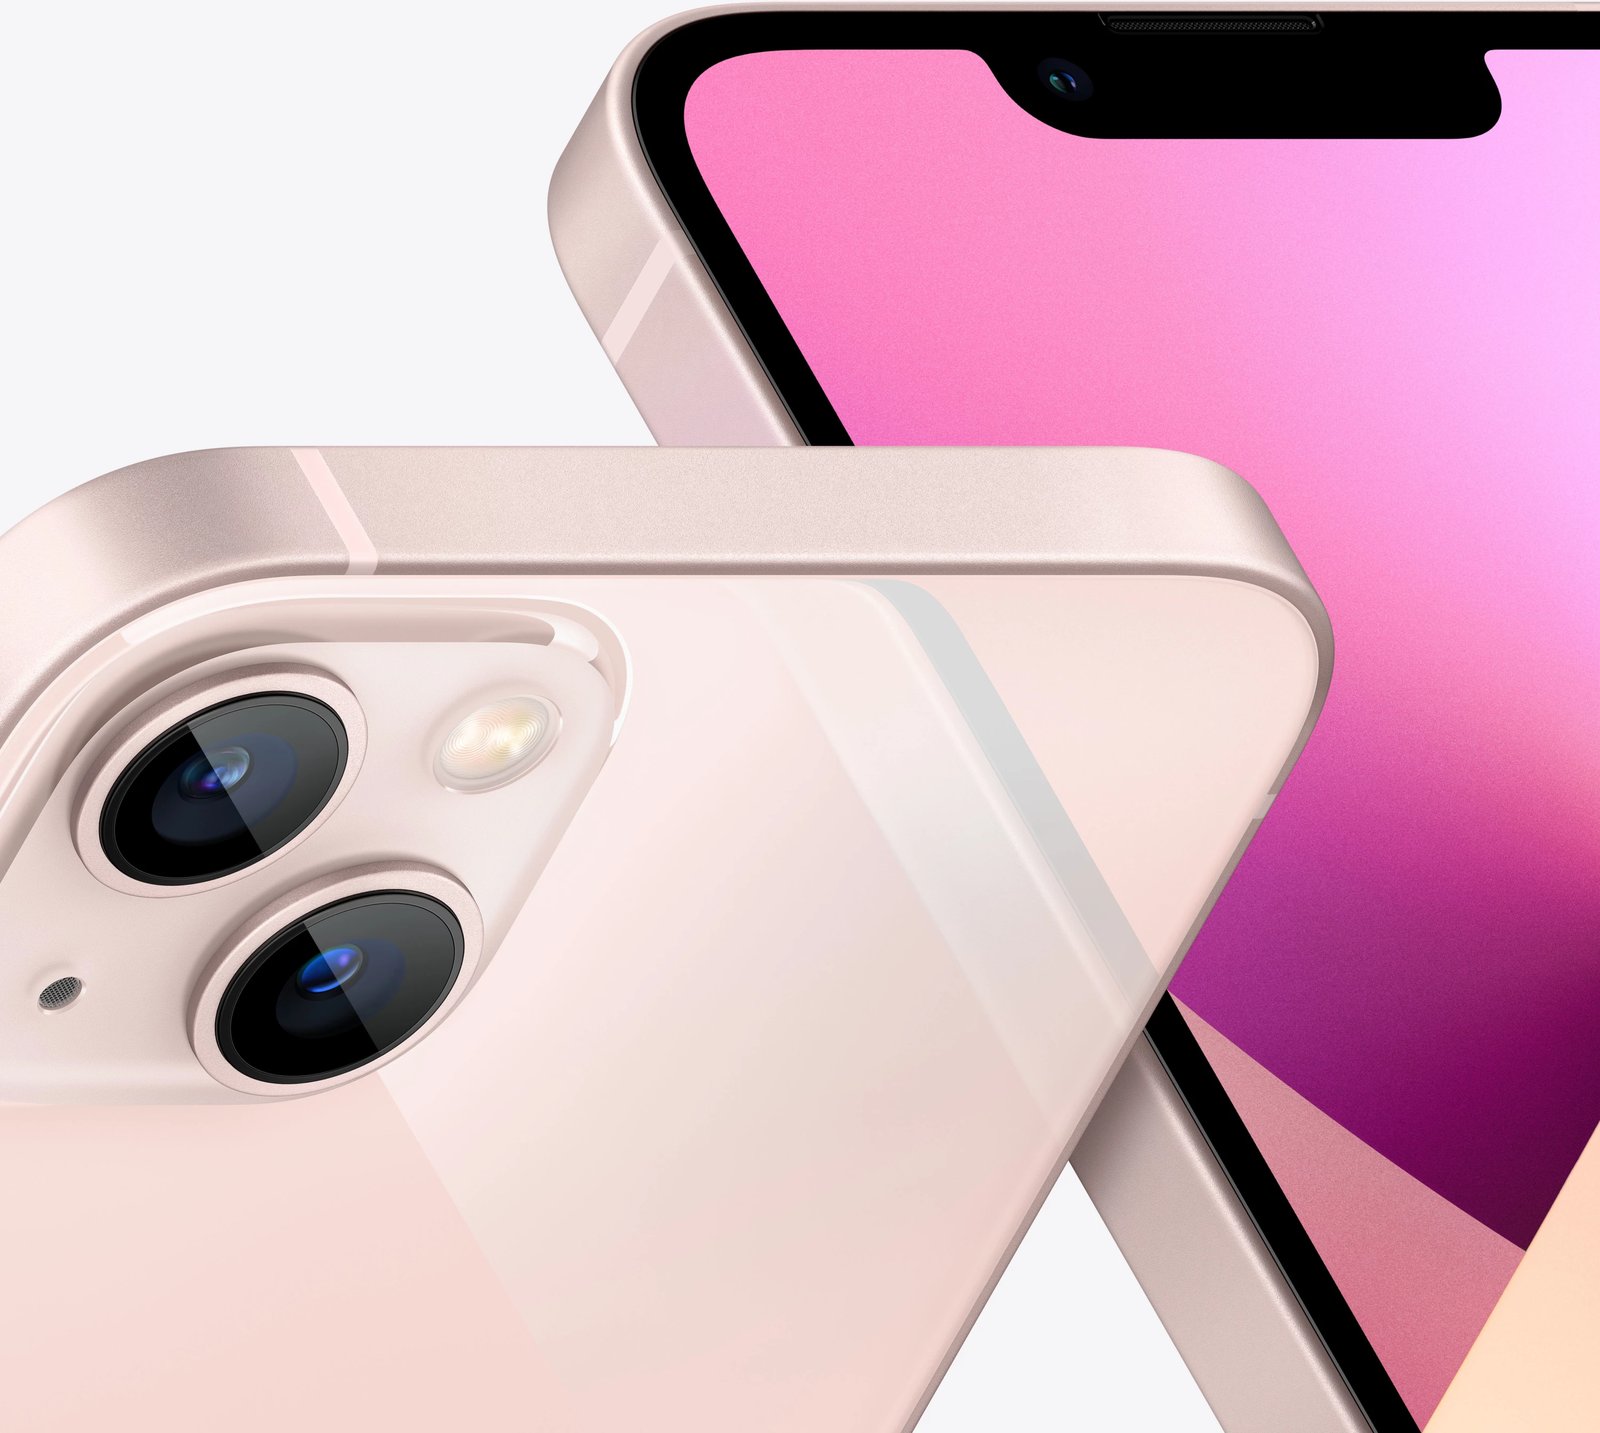 Celular Apple iPhone 13 mini, 5.4", 512GB, rozë